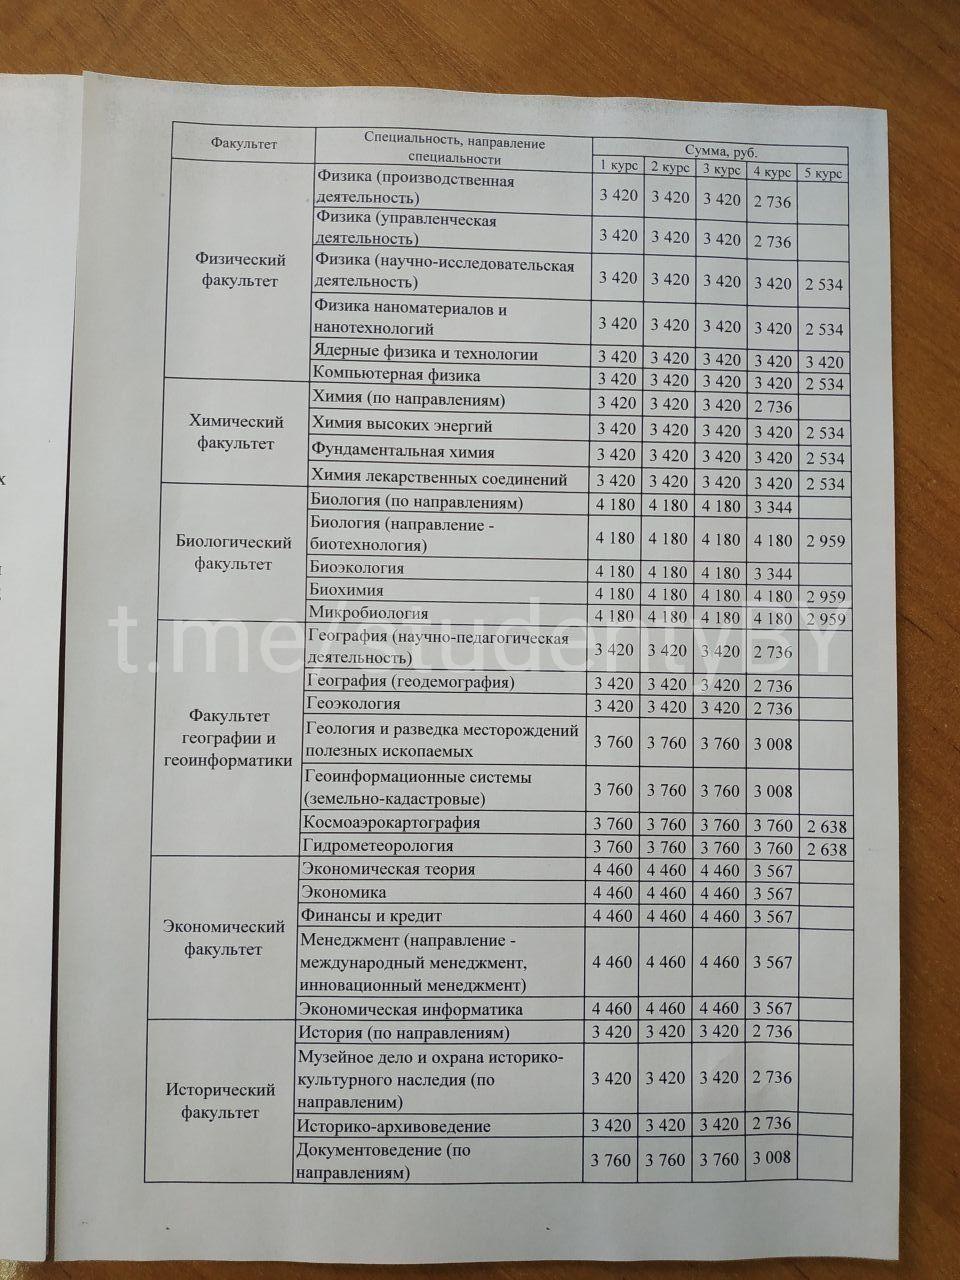 БДУ пасярод семестра падняў плату за навучанне — у сярэднім на 400-500 рублёў